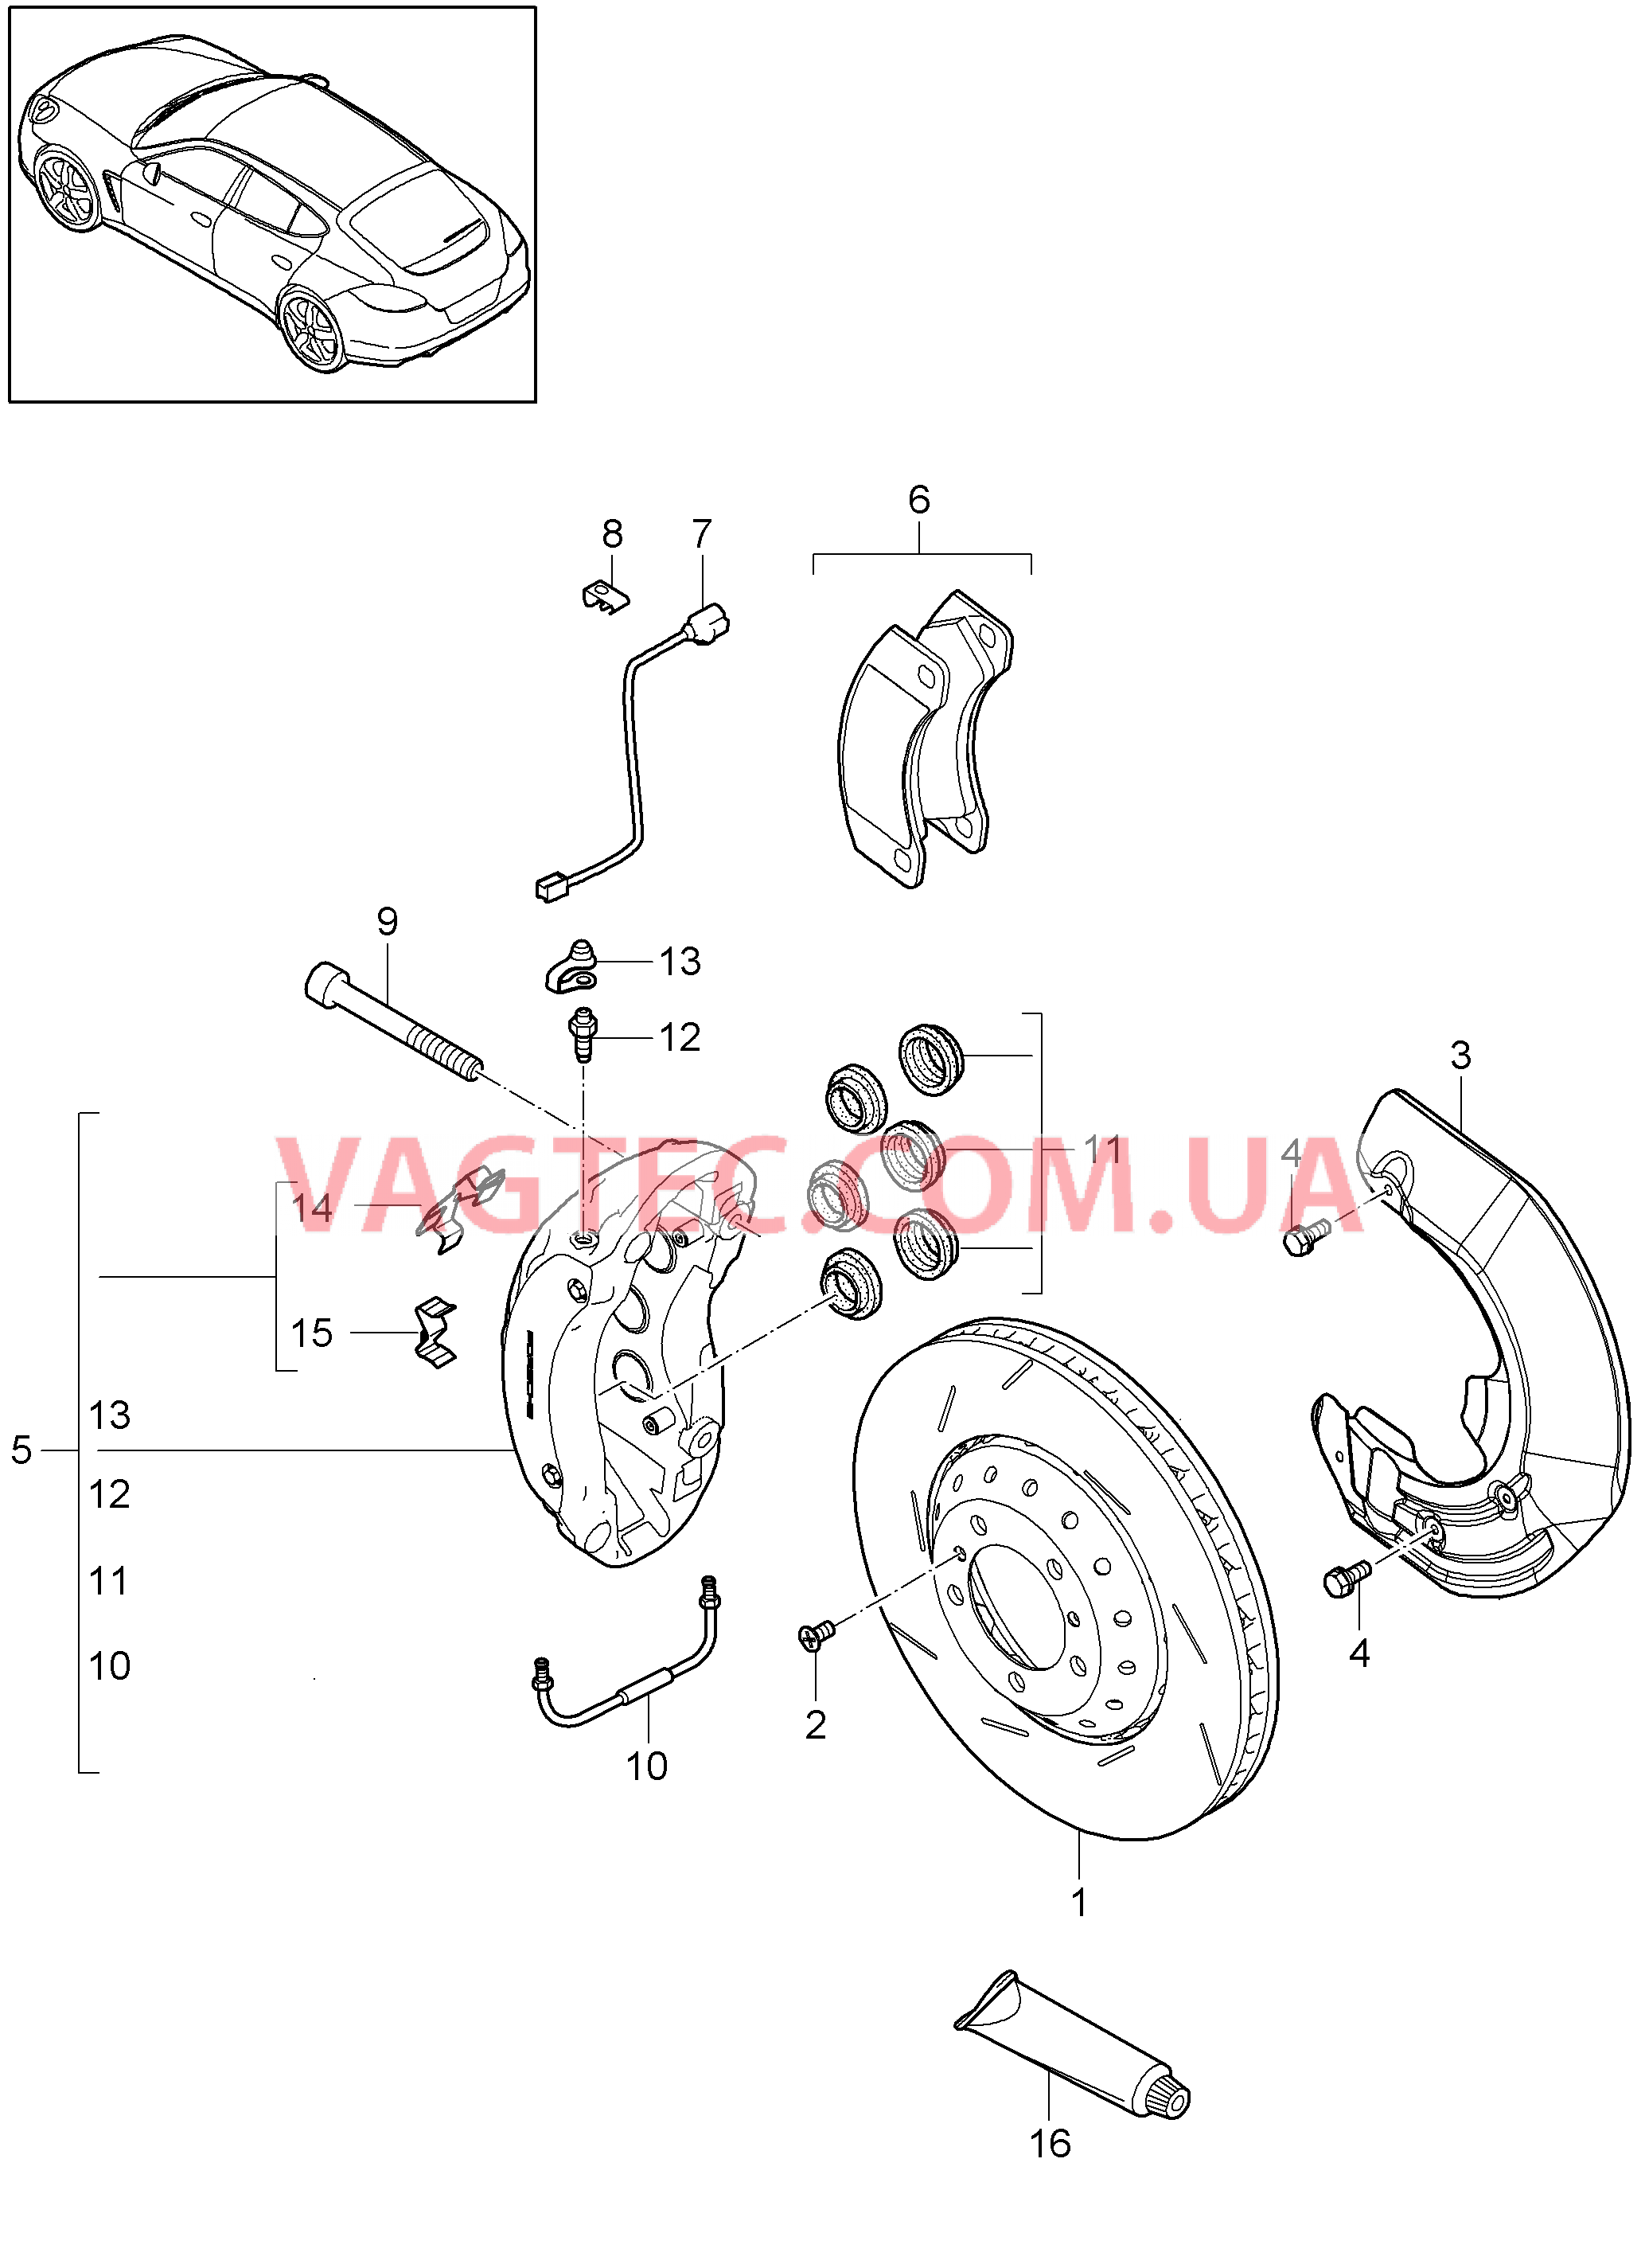 602-007 Дисковой тормоз, Передняя ось
						
						TURBO, MCW.BA, TURBO S, MCW.CA для PORSCHE Panamera 2010-2016